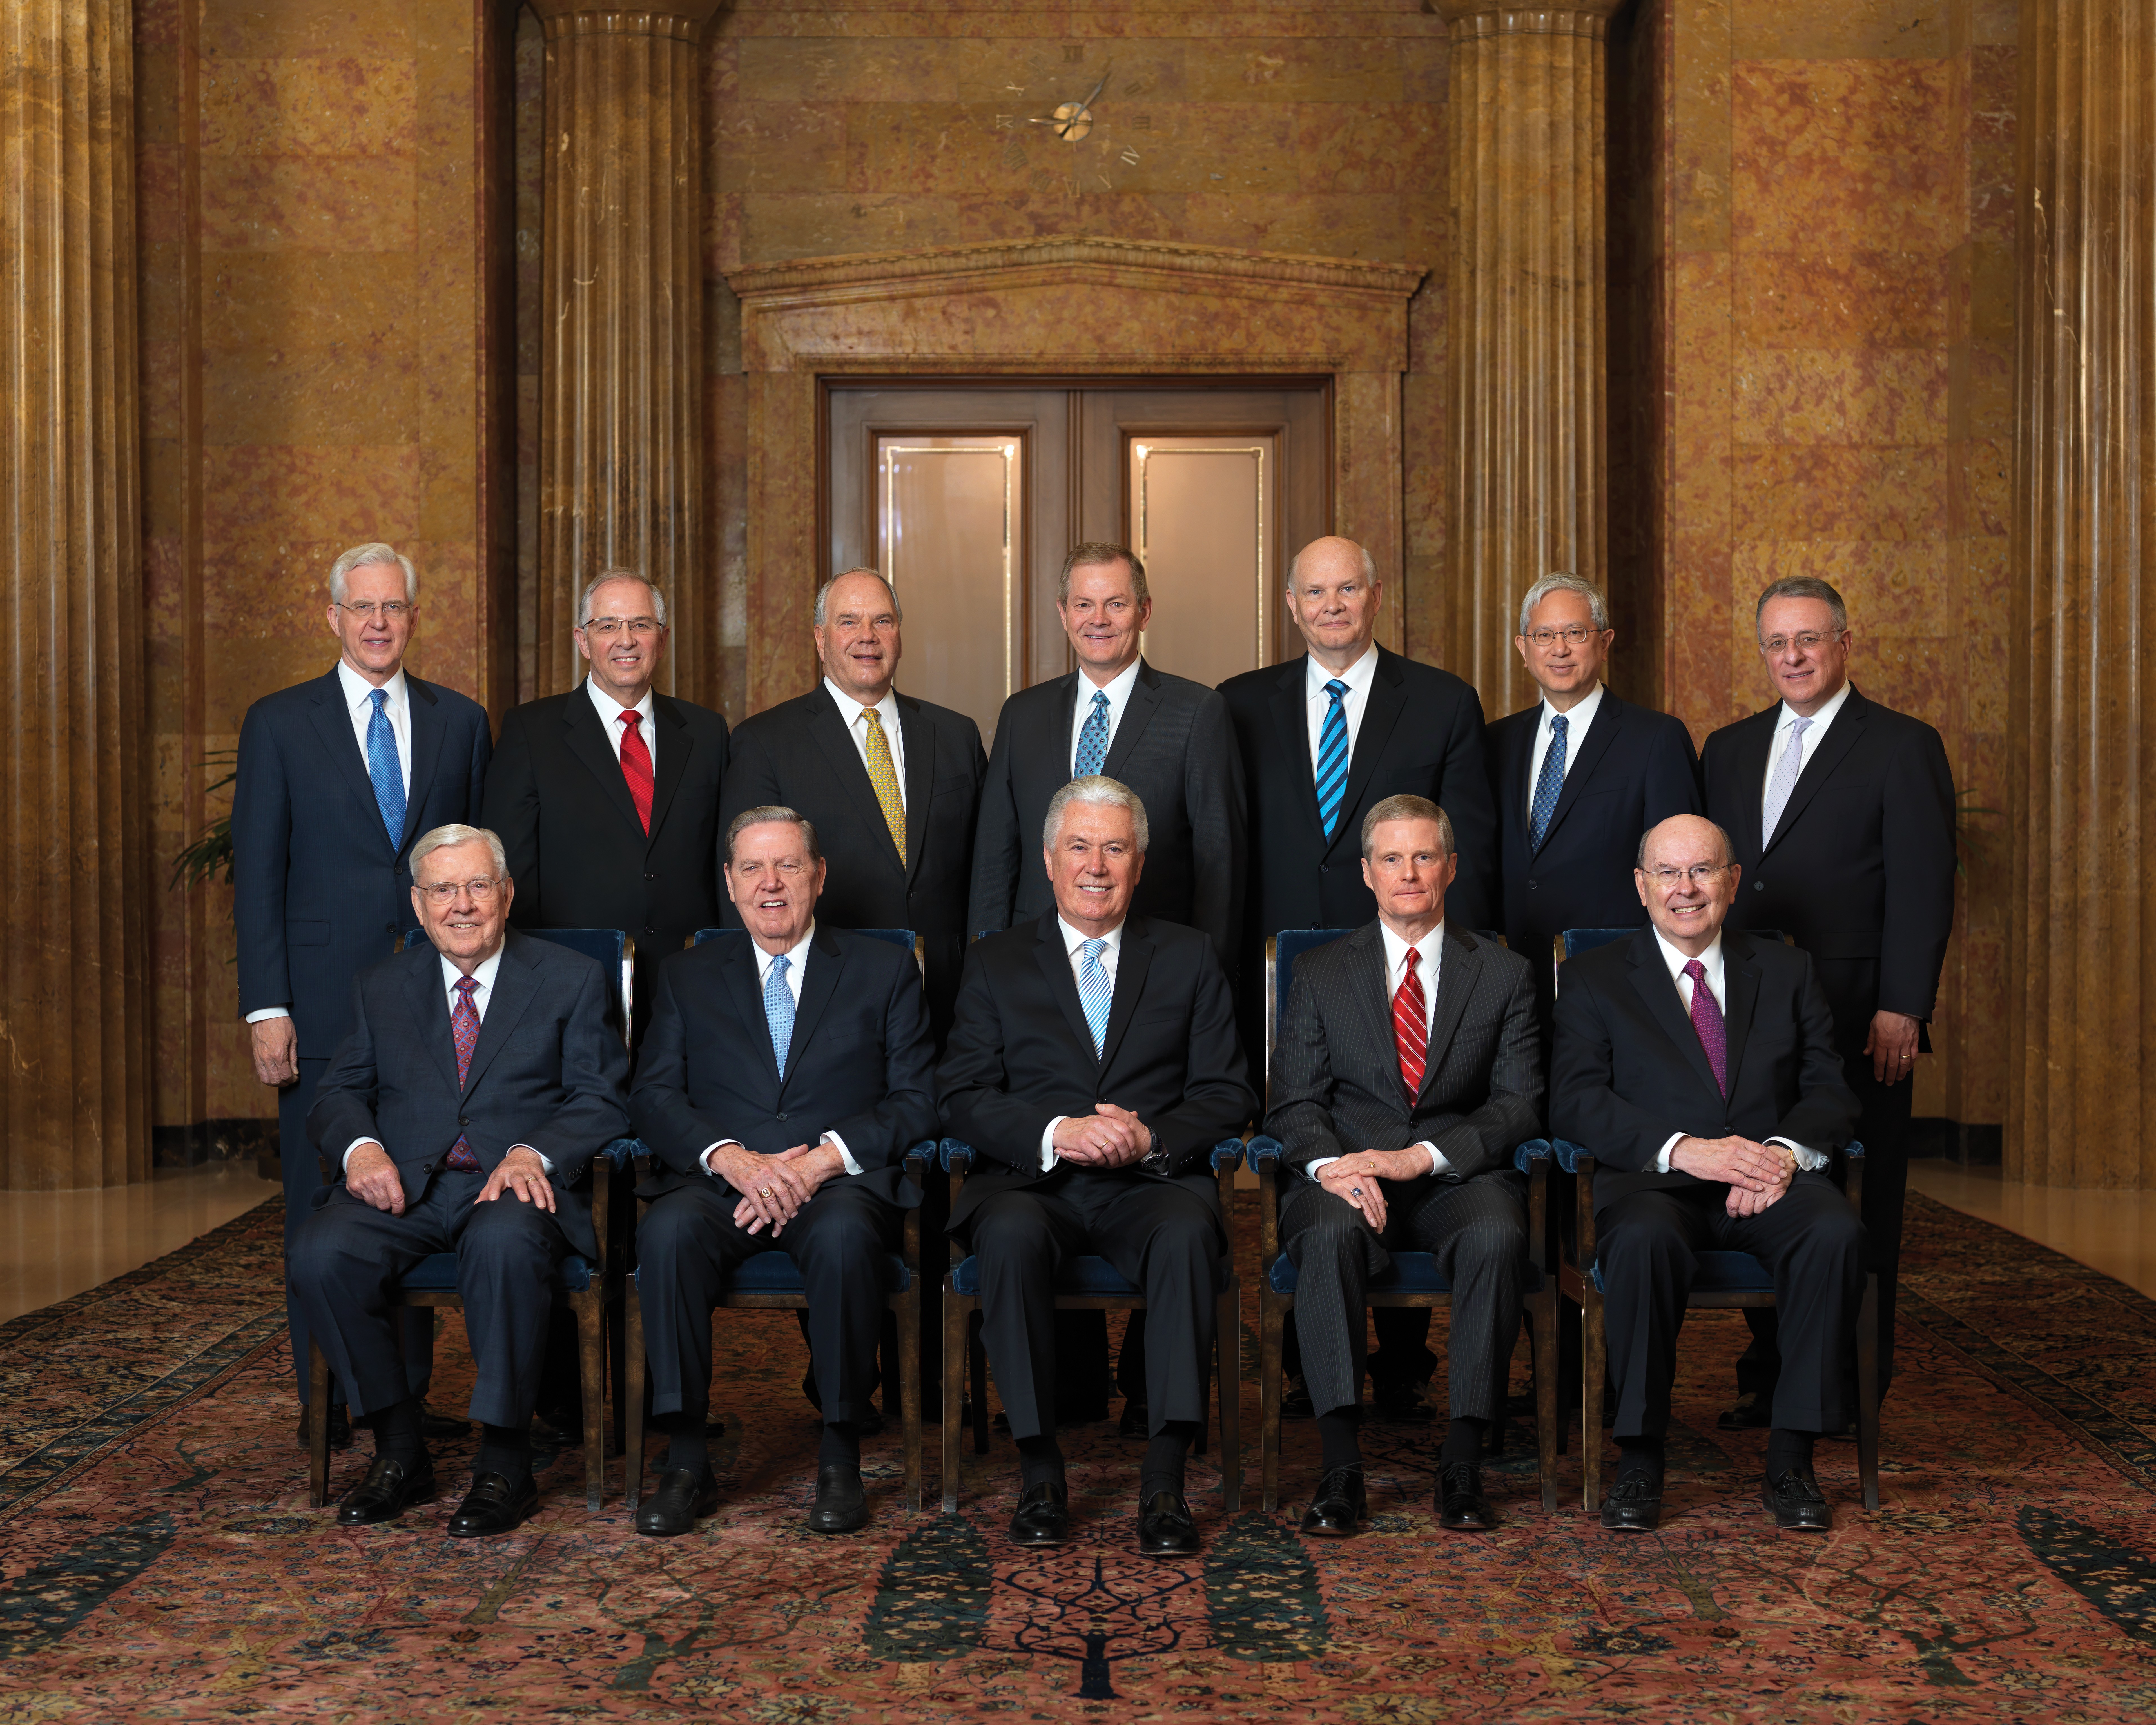 十二使徒定員会の公式肖像集合写真。